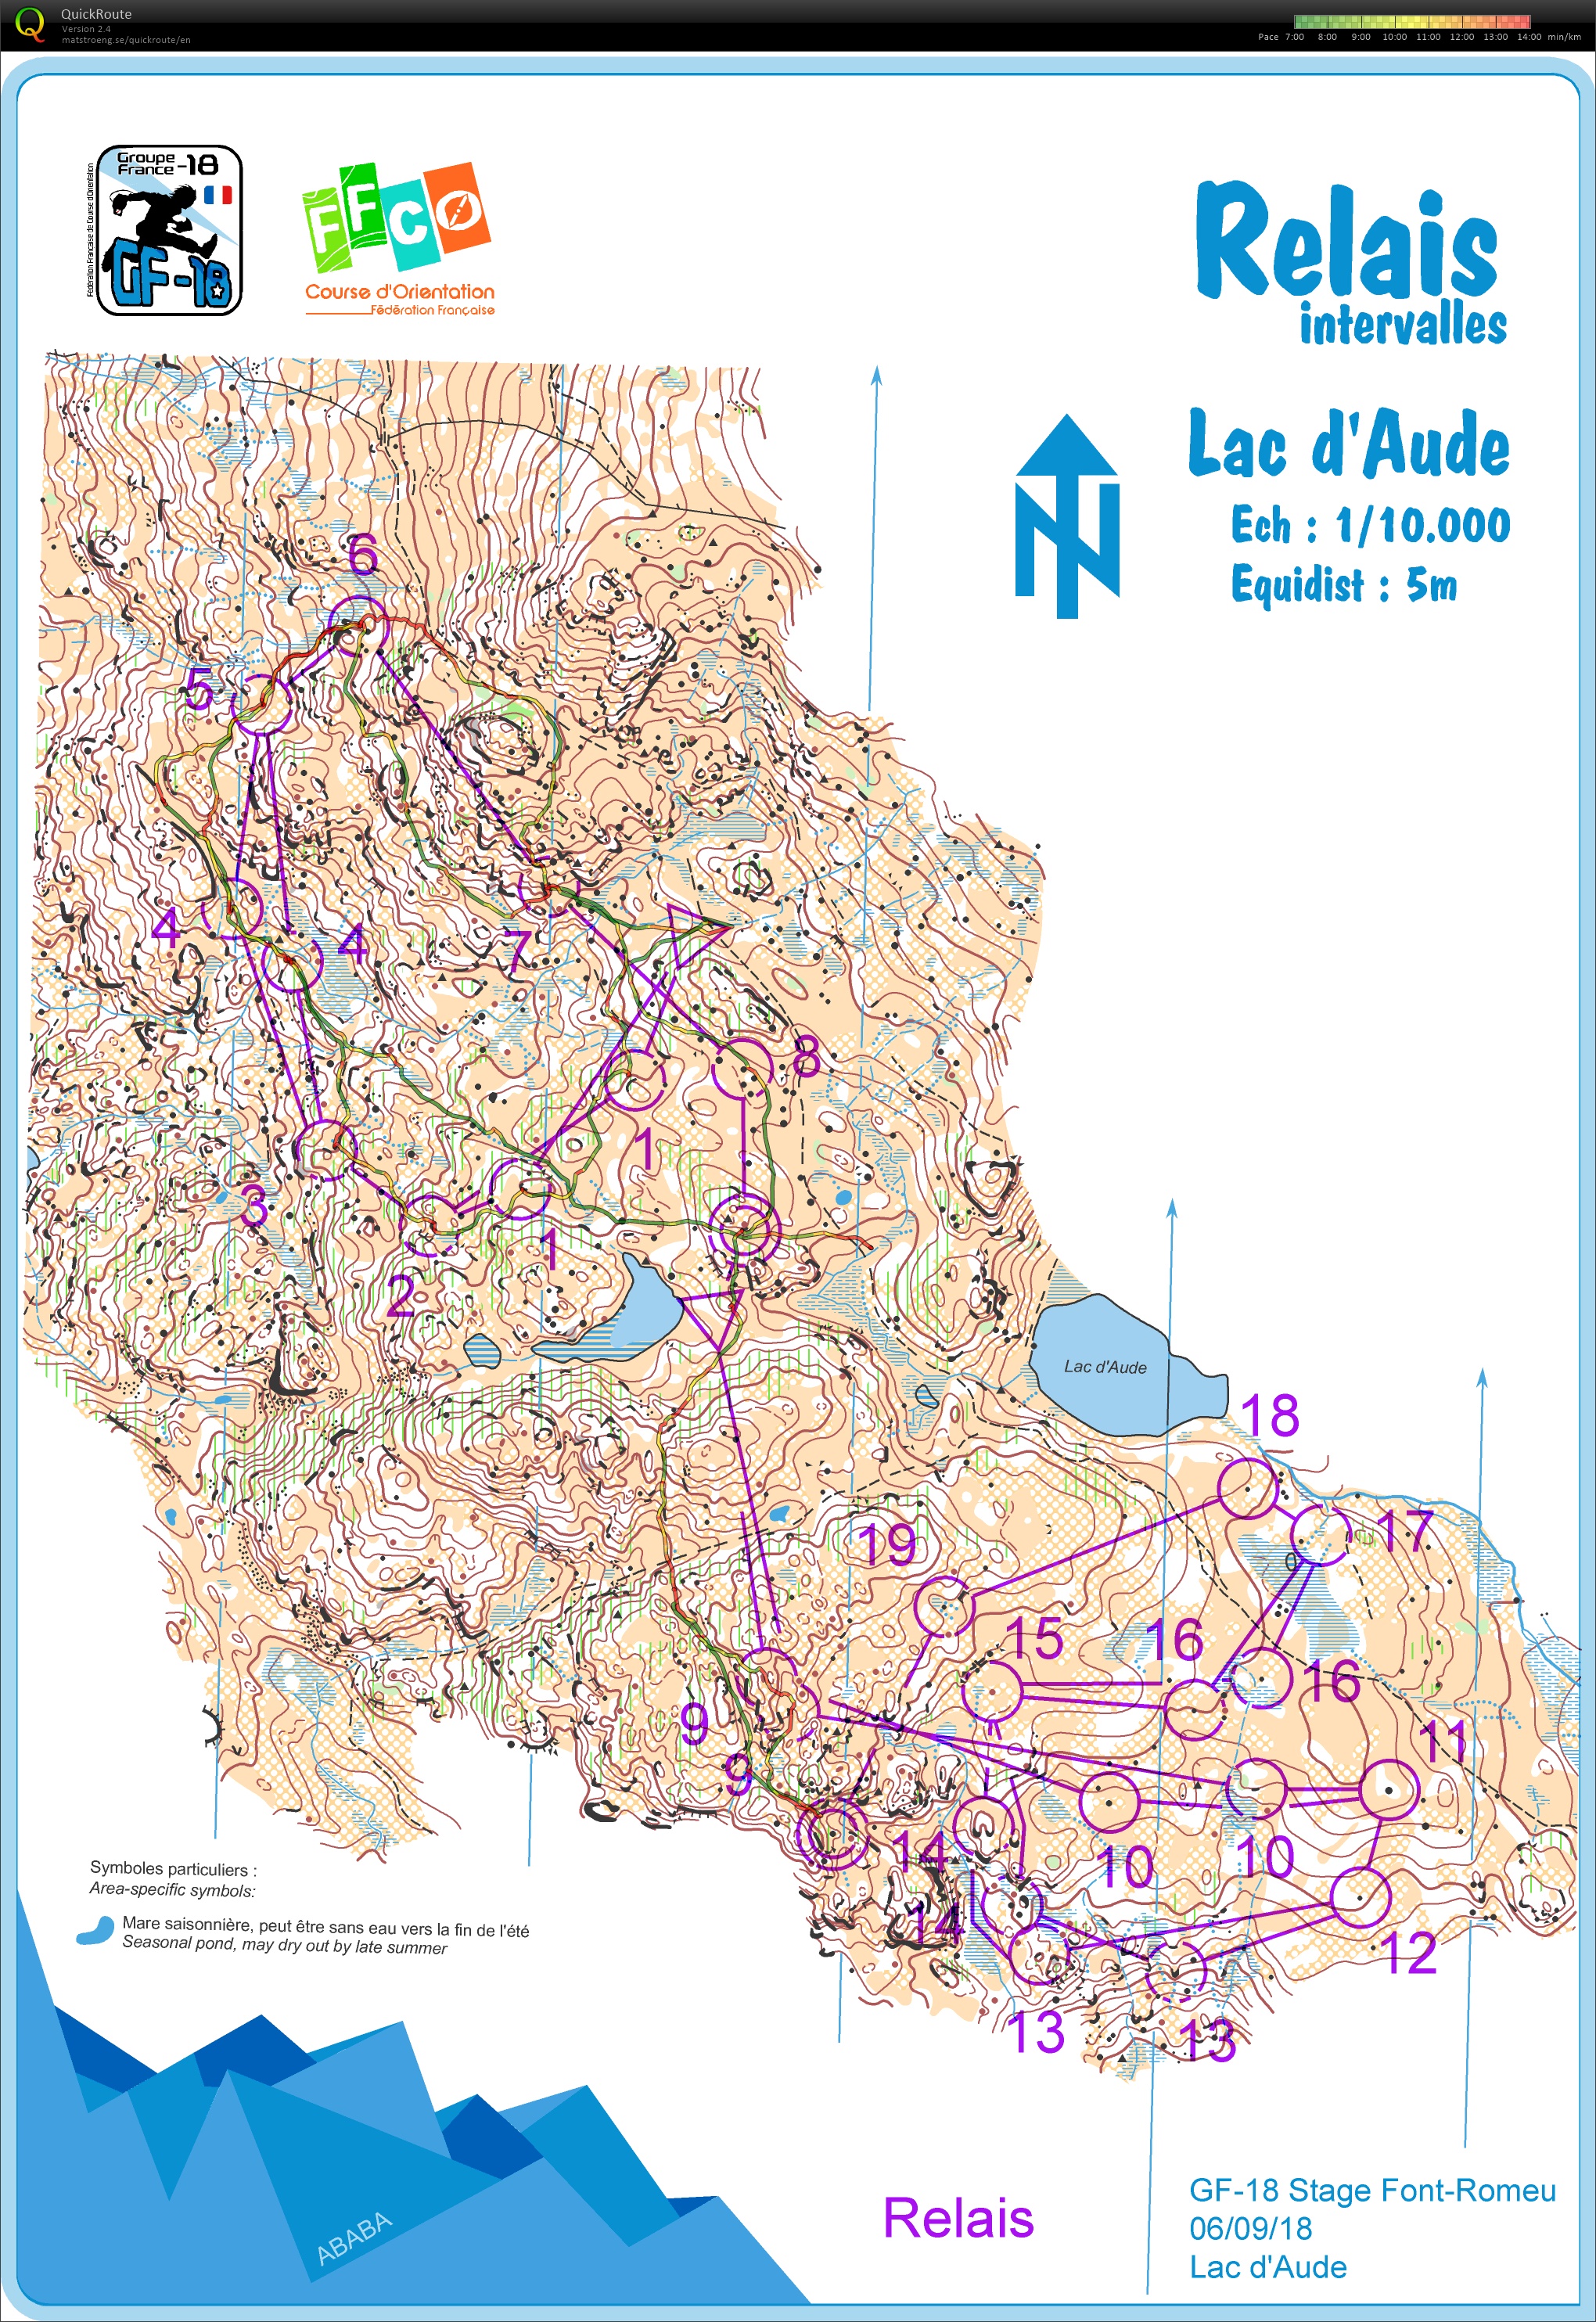 Stage gf-18 Font-Romeu // (3) Relais scénario (Lac d'Aude) (2019-08-06)